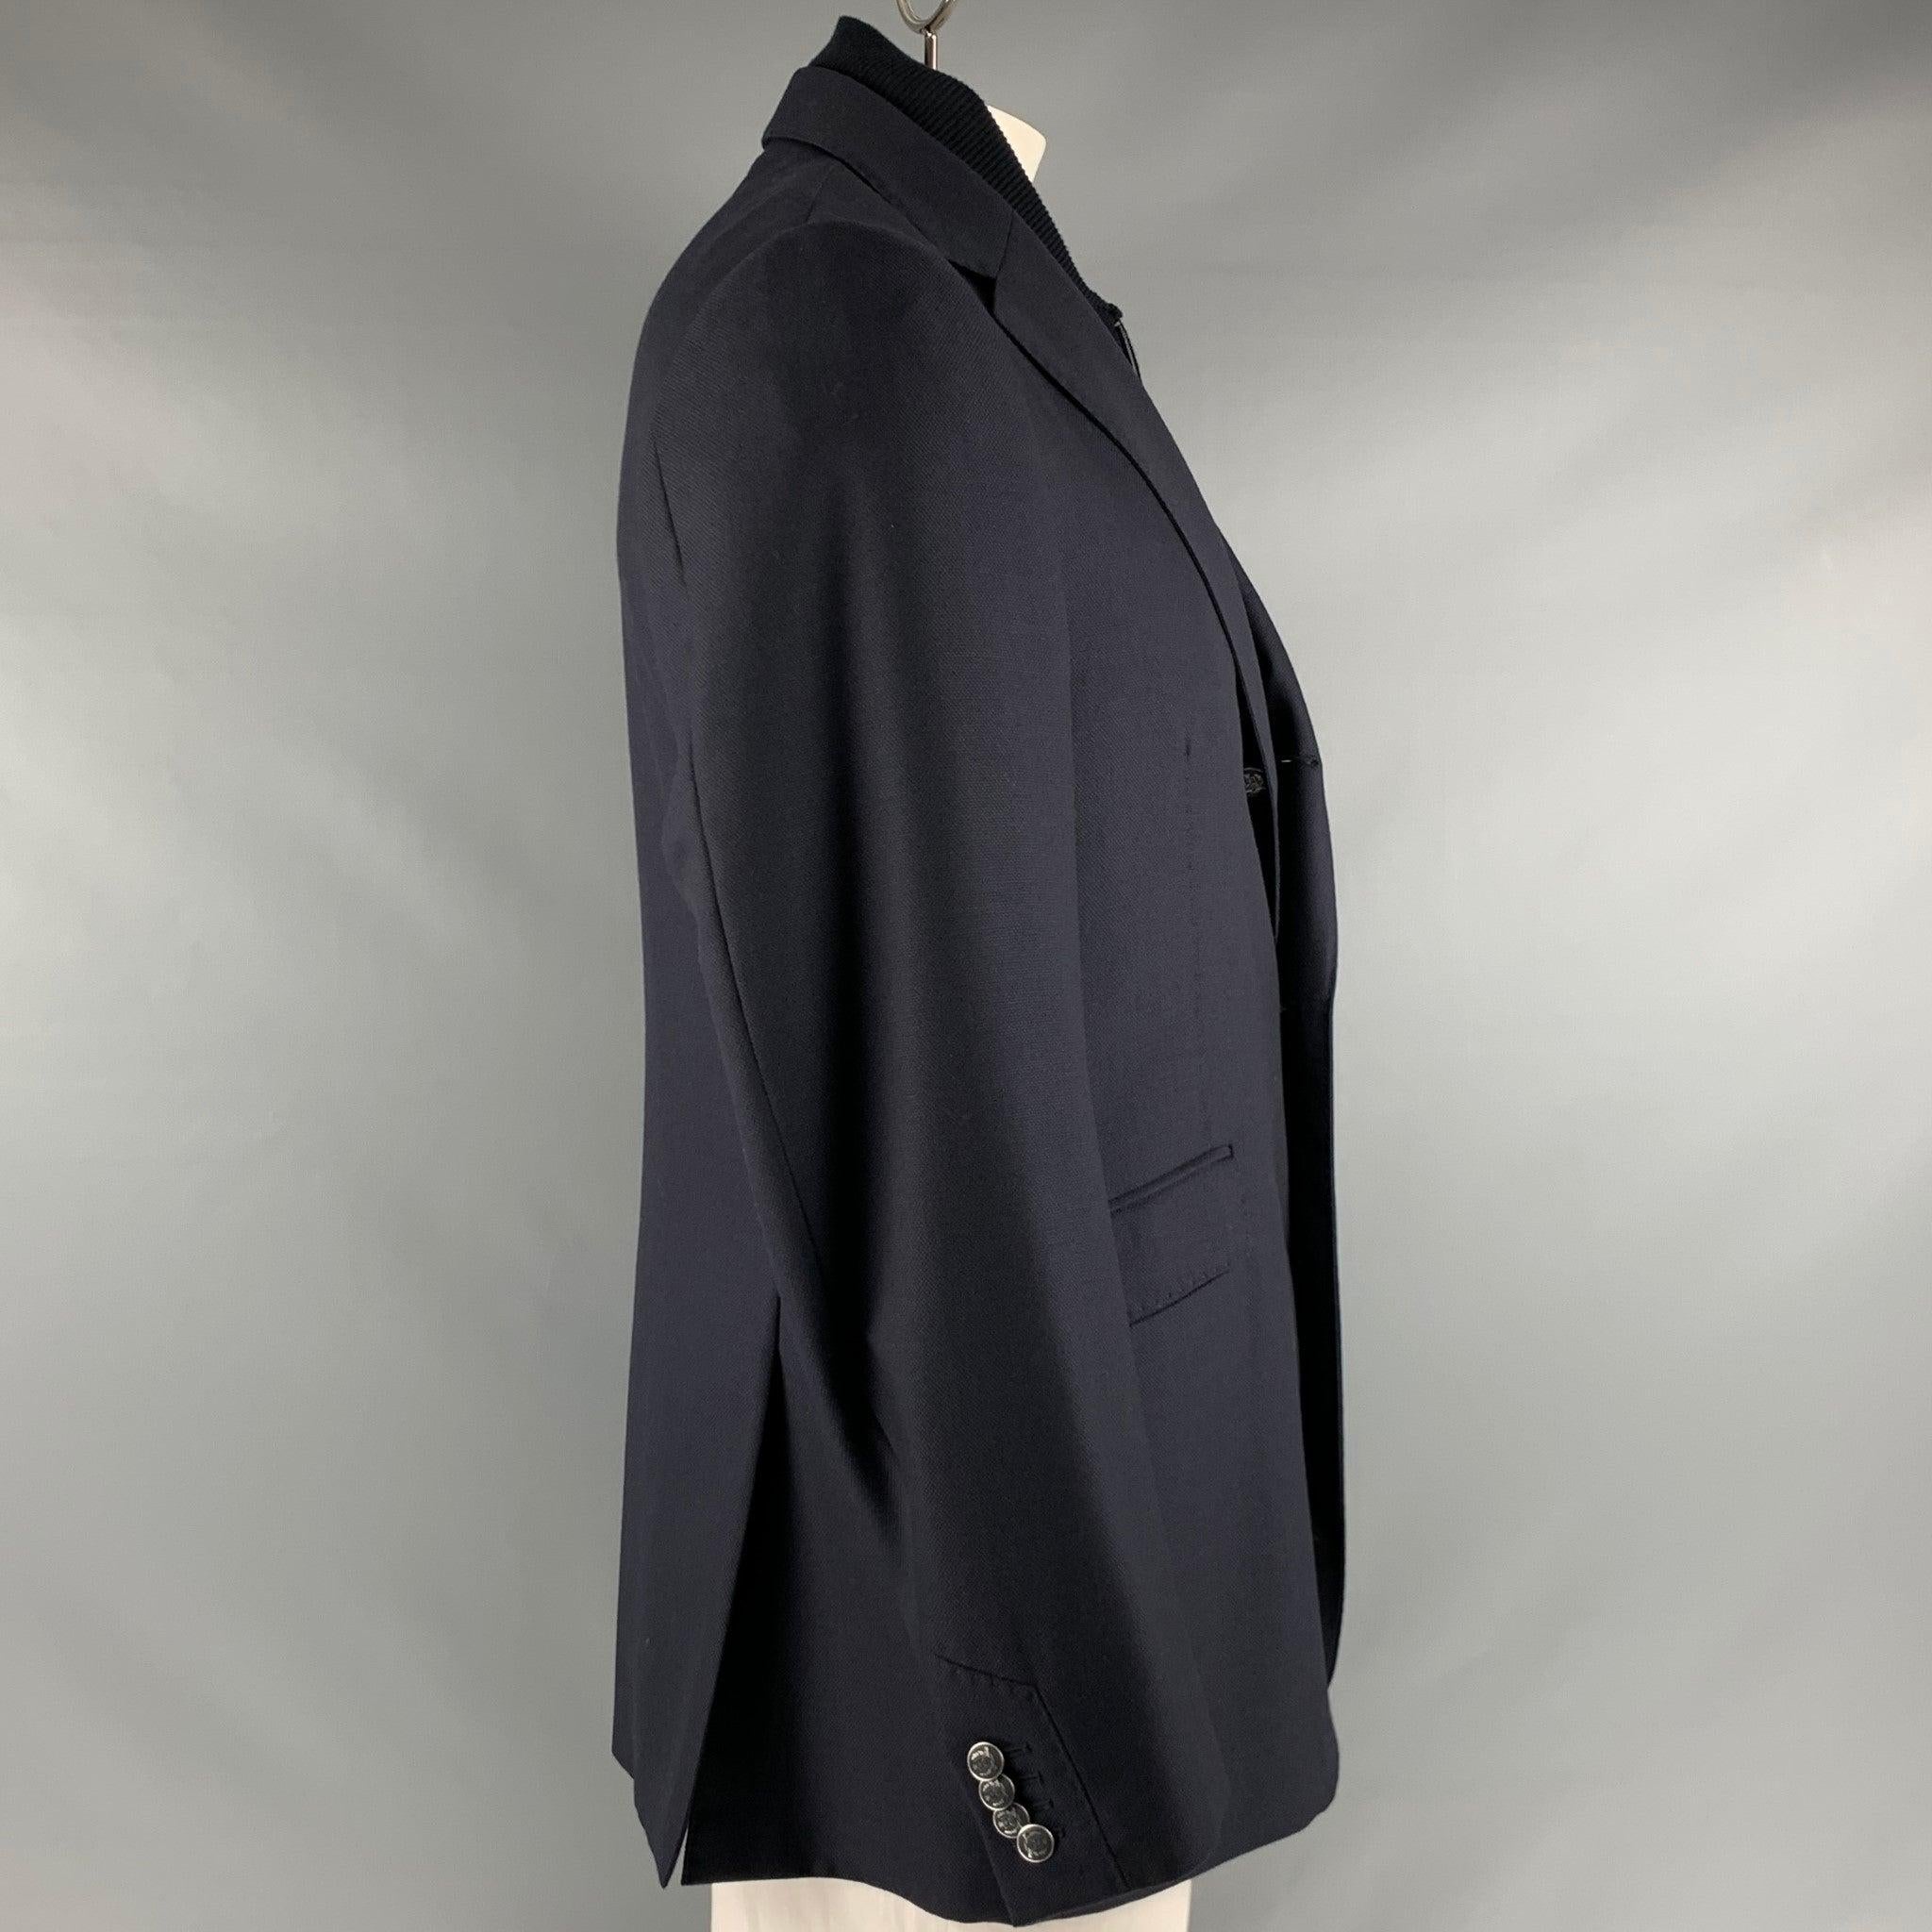 CORNELIANI
veste en tissu de laine vierge marine, style simple boutonnage, trois poches, doublure intérieure amovible zippée et fermeture à trois boutons. Fabriquées en Italie. Très bon état d'origine. Signes mineurs d'usure. 

Marqué :   52